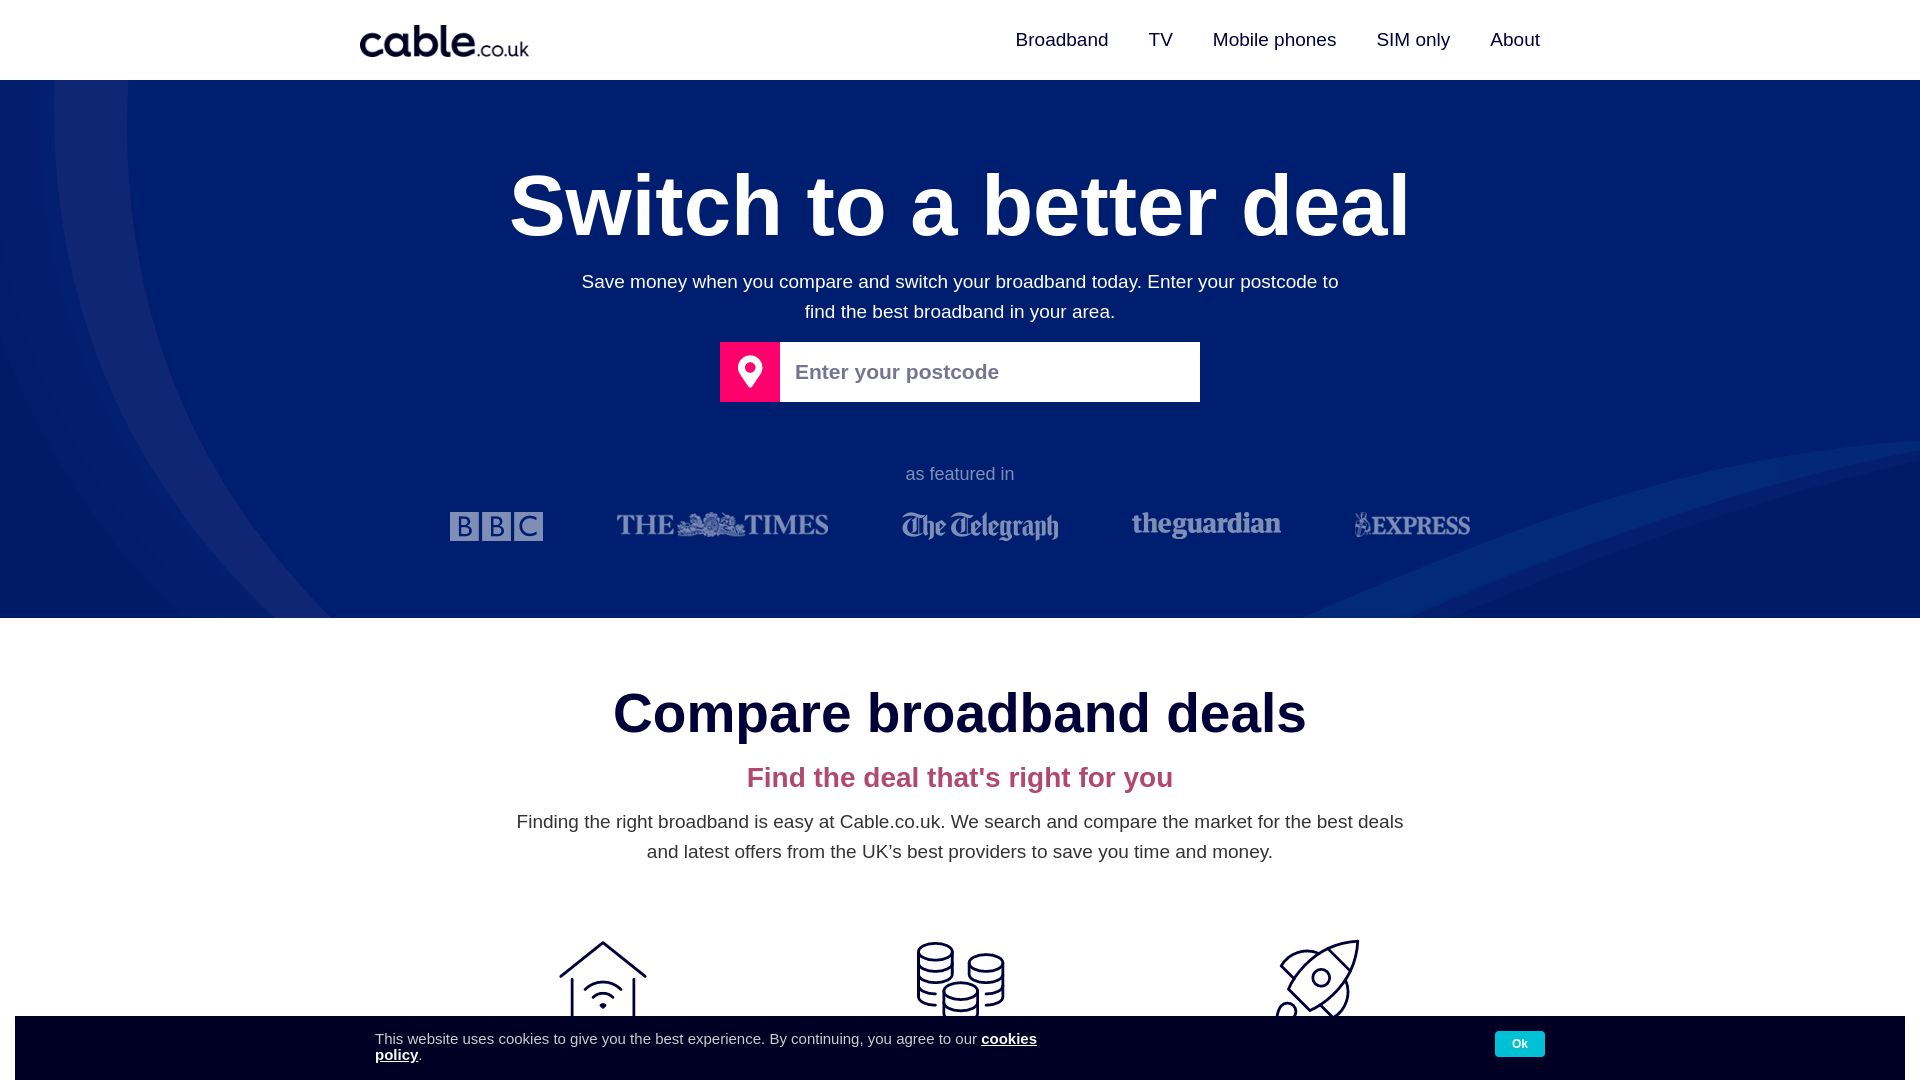 Status do site cable.co.uk está   ONLINE